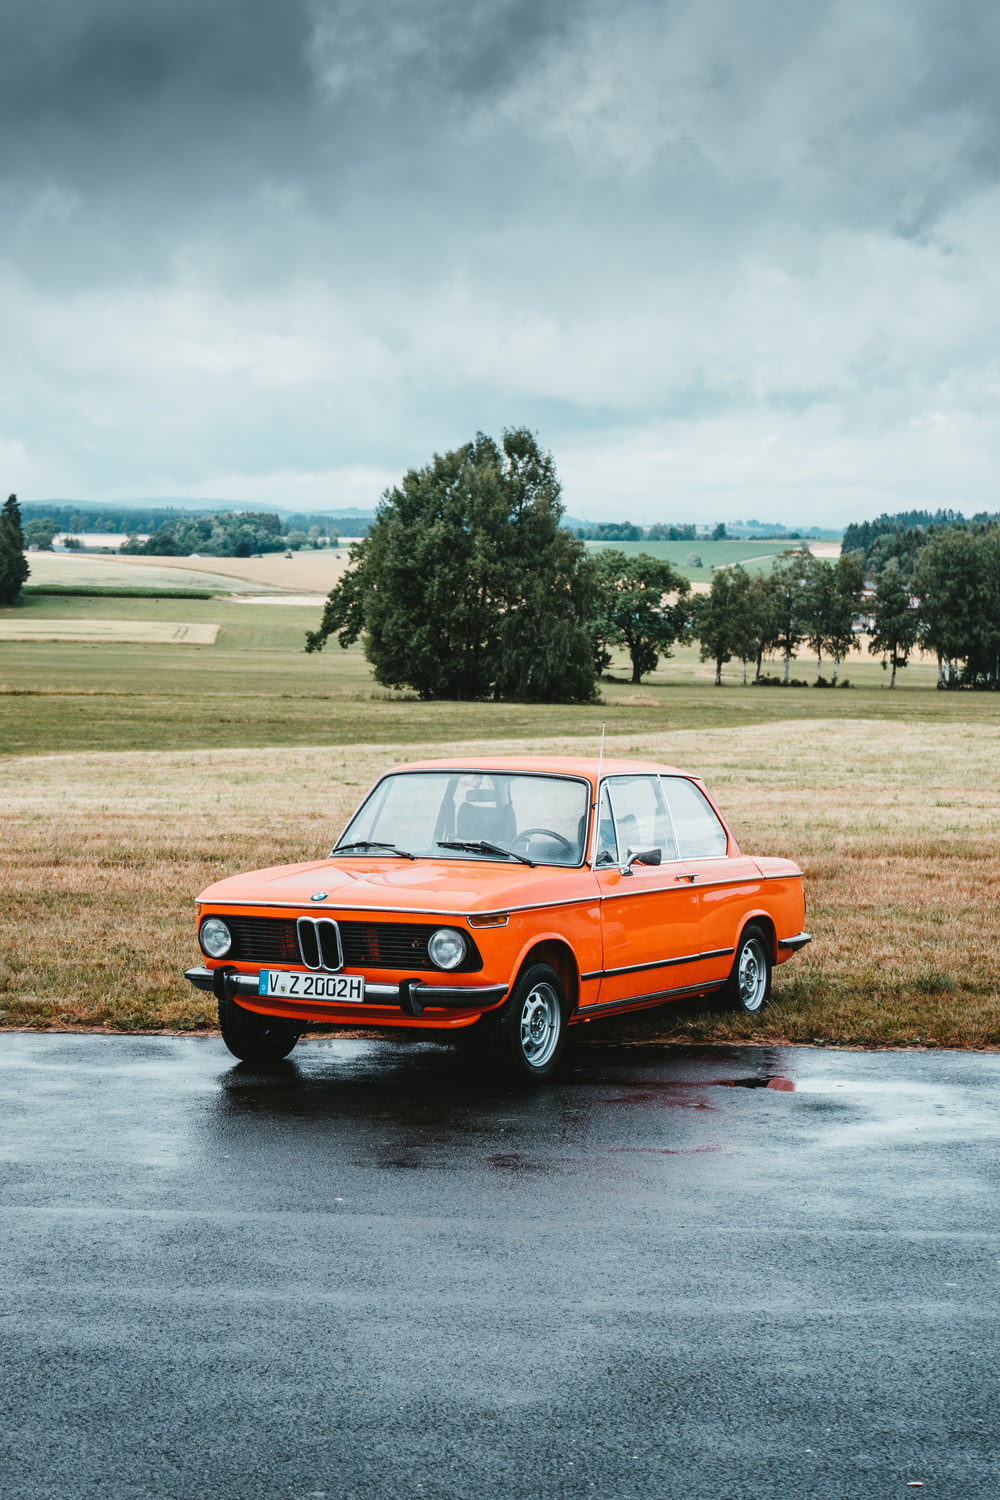 BMW coupé clásico naranja estacionado al borde de la carretera bajo un cielo gris nublado